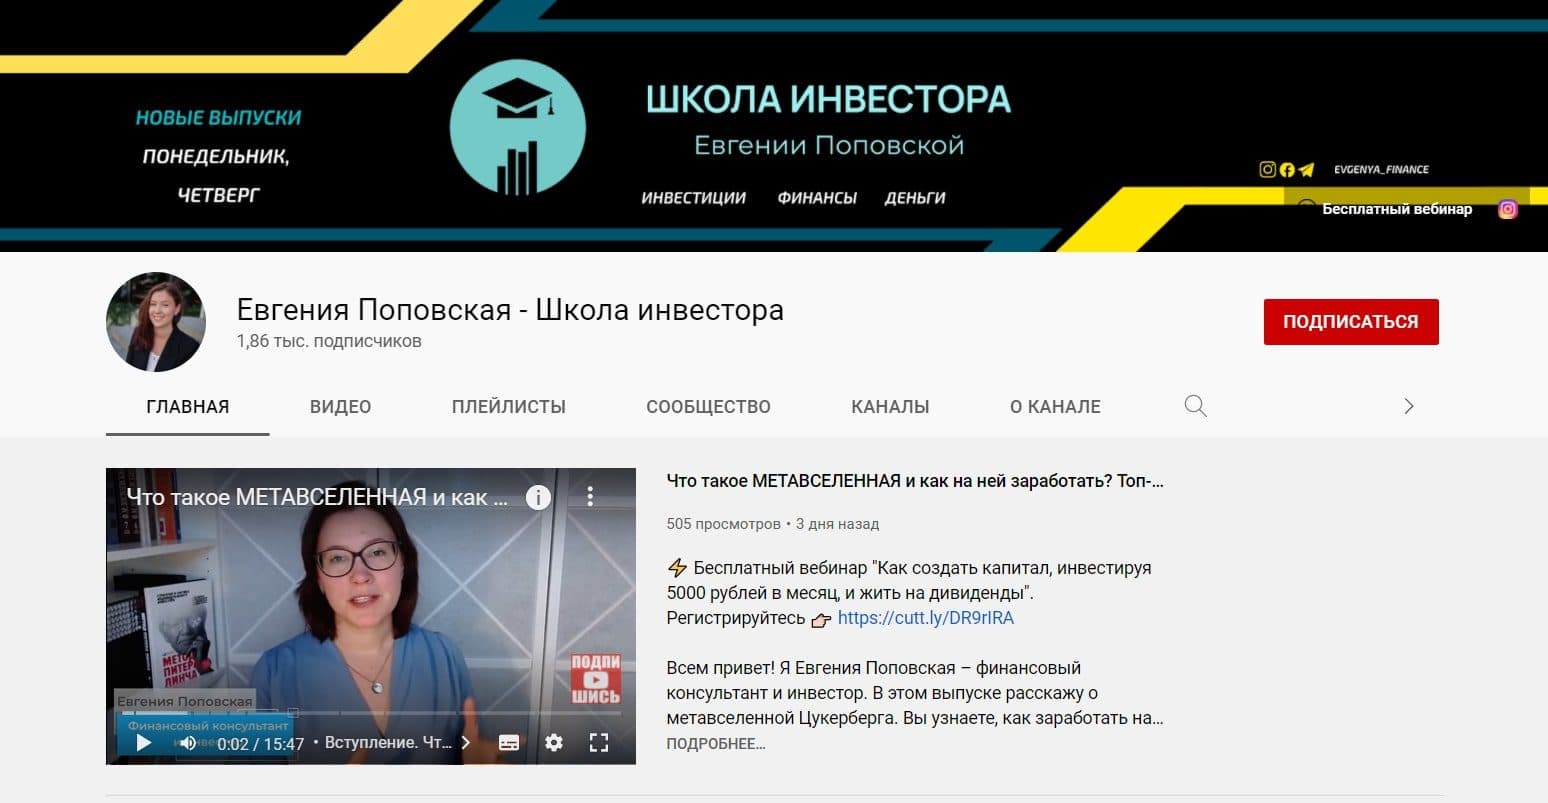 Ютуб канал Евгении Поповской